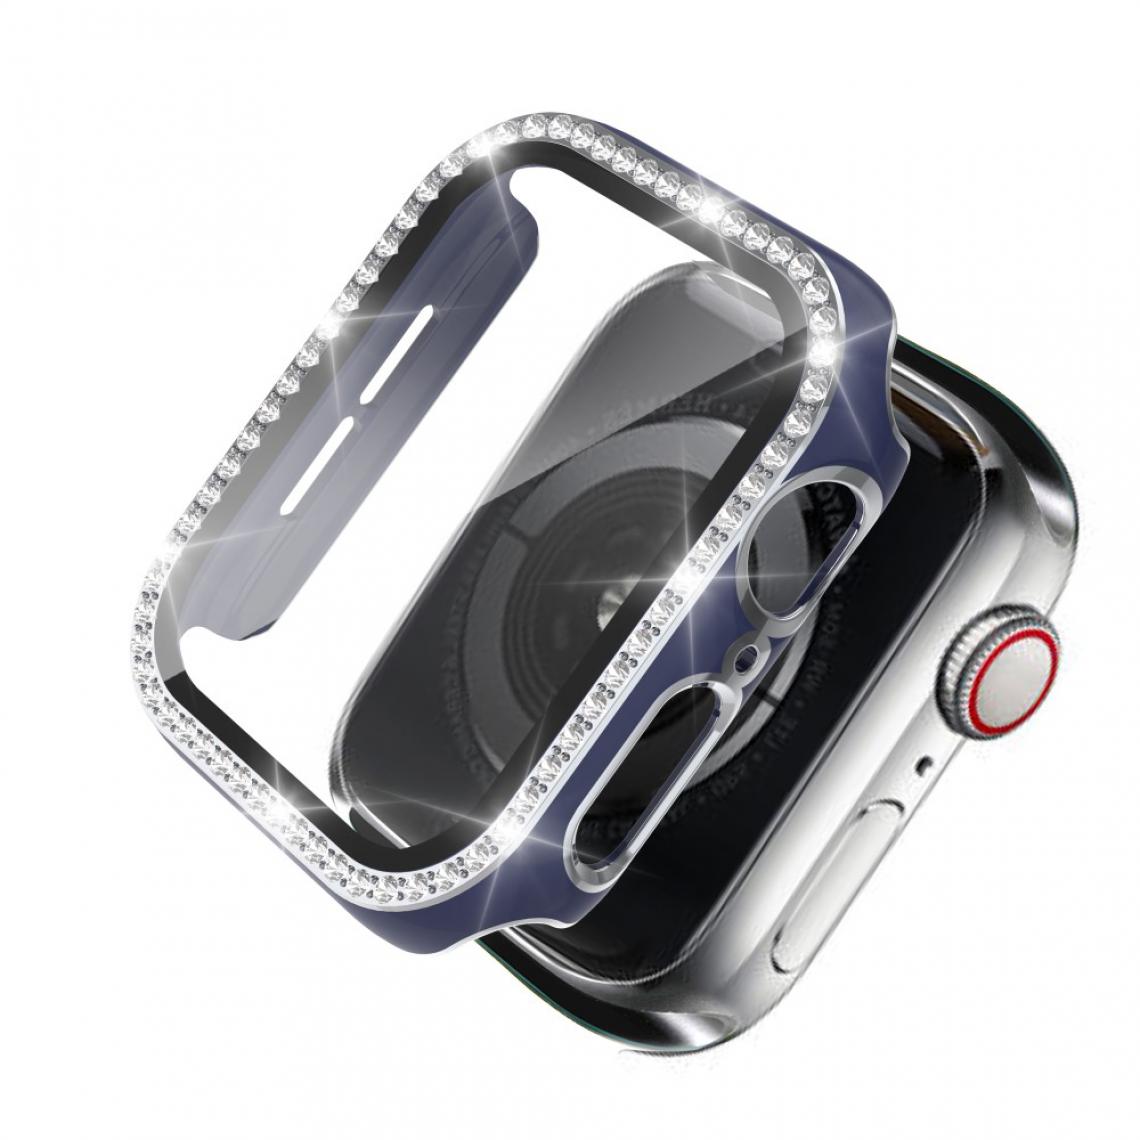 Other - Coque en TPU Strass en cristal de galvanoplastie bicolore bleu/argent pour votre Apple Watch 1/2/3 42mm - Accessoires bracelet connecté